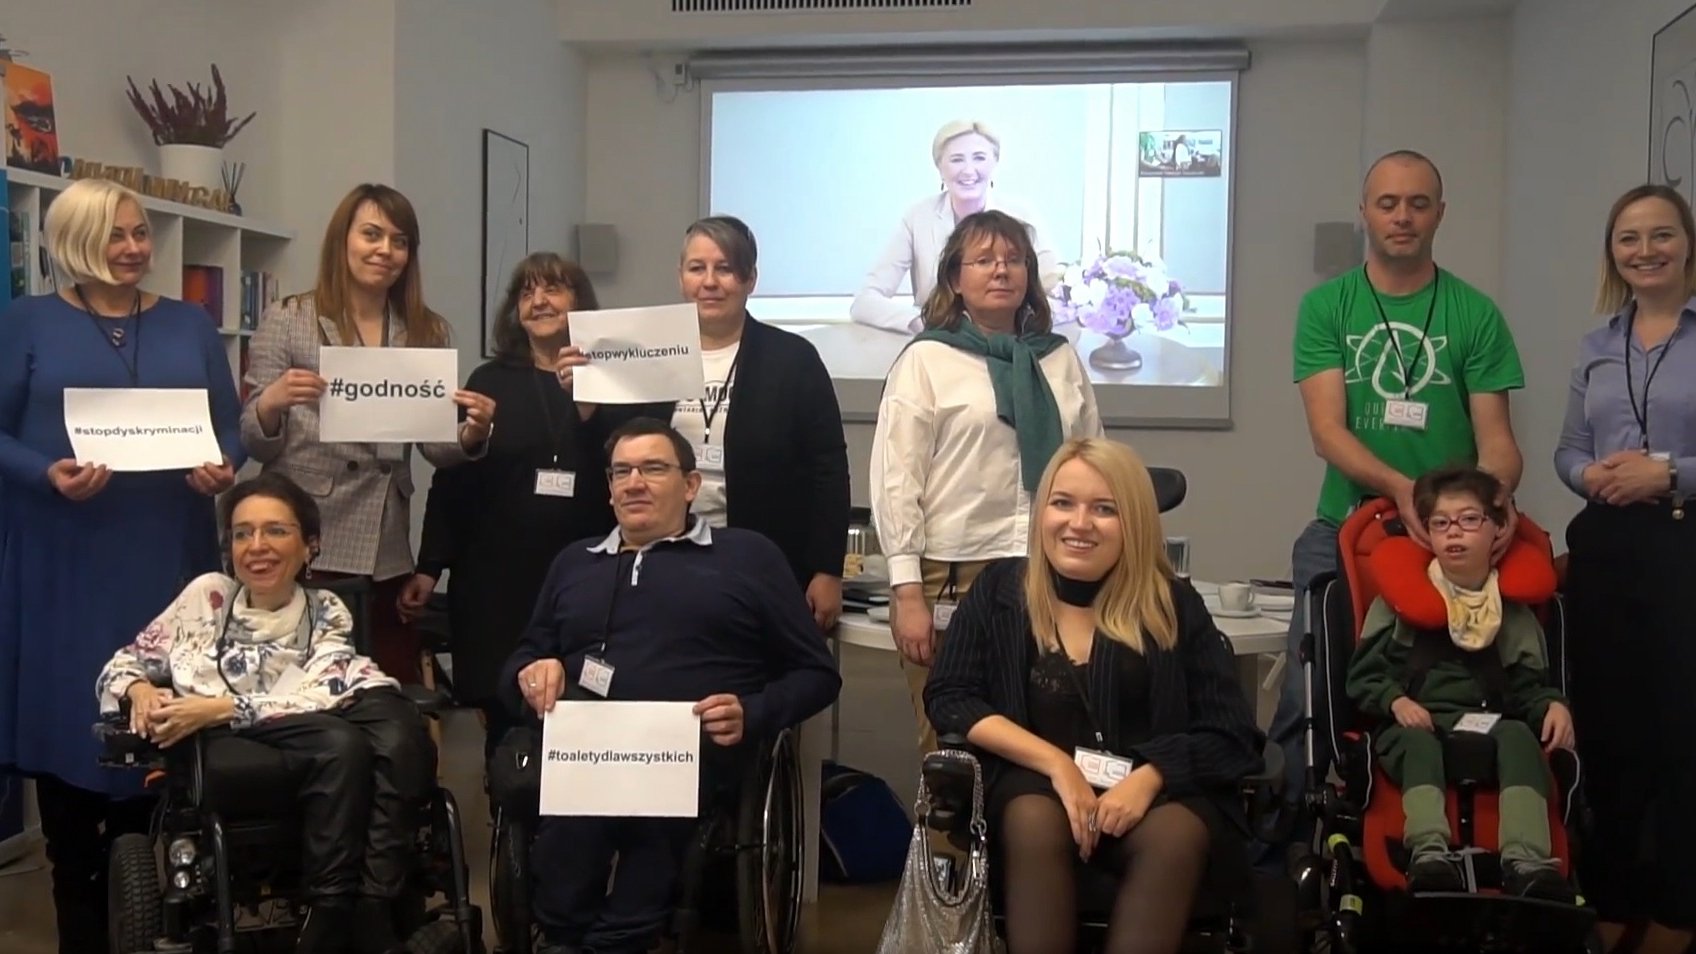 Zdjęcie przedstawia grupę osób - niektóre z niepełnosprawnościami na wózkach - pozującą do zdjęcia.